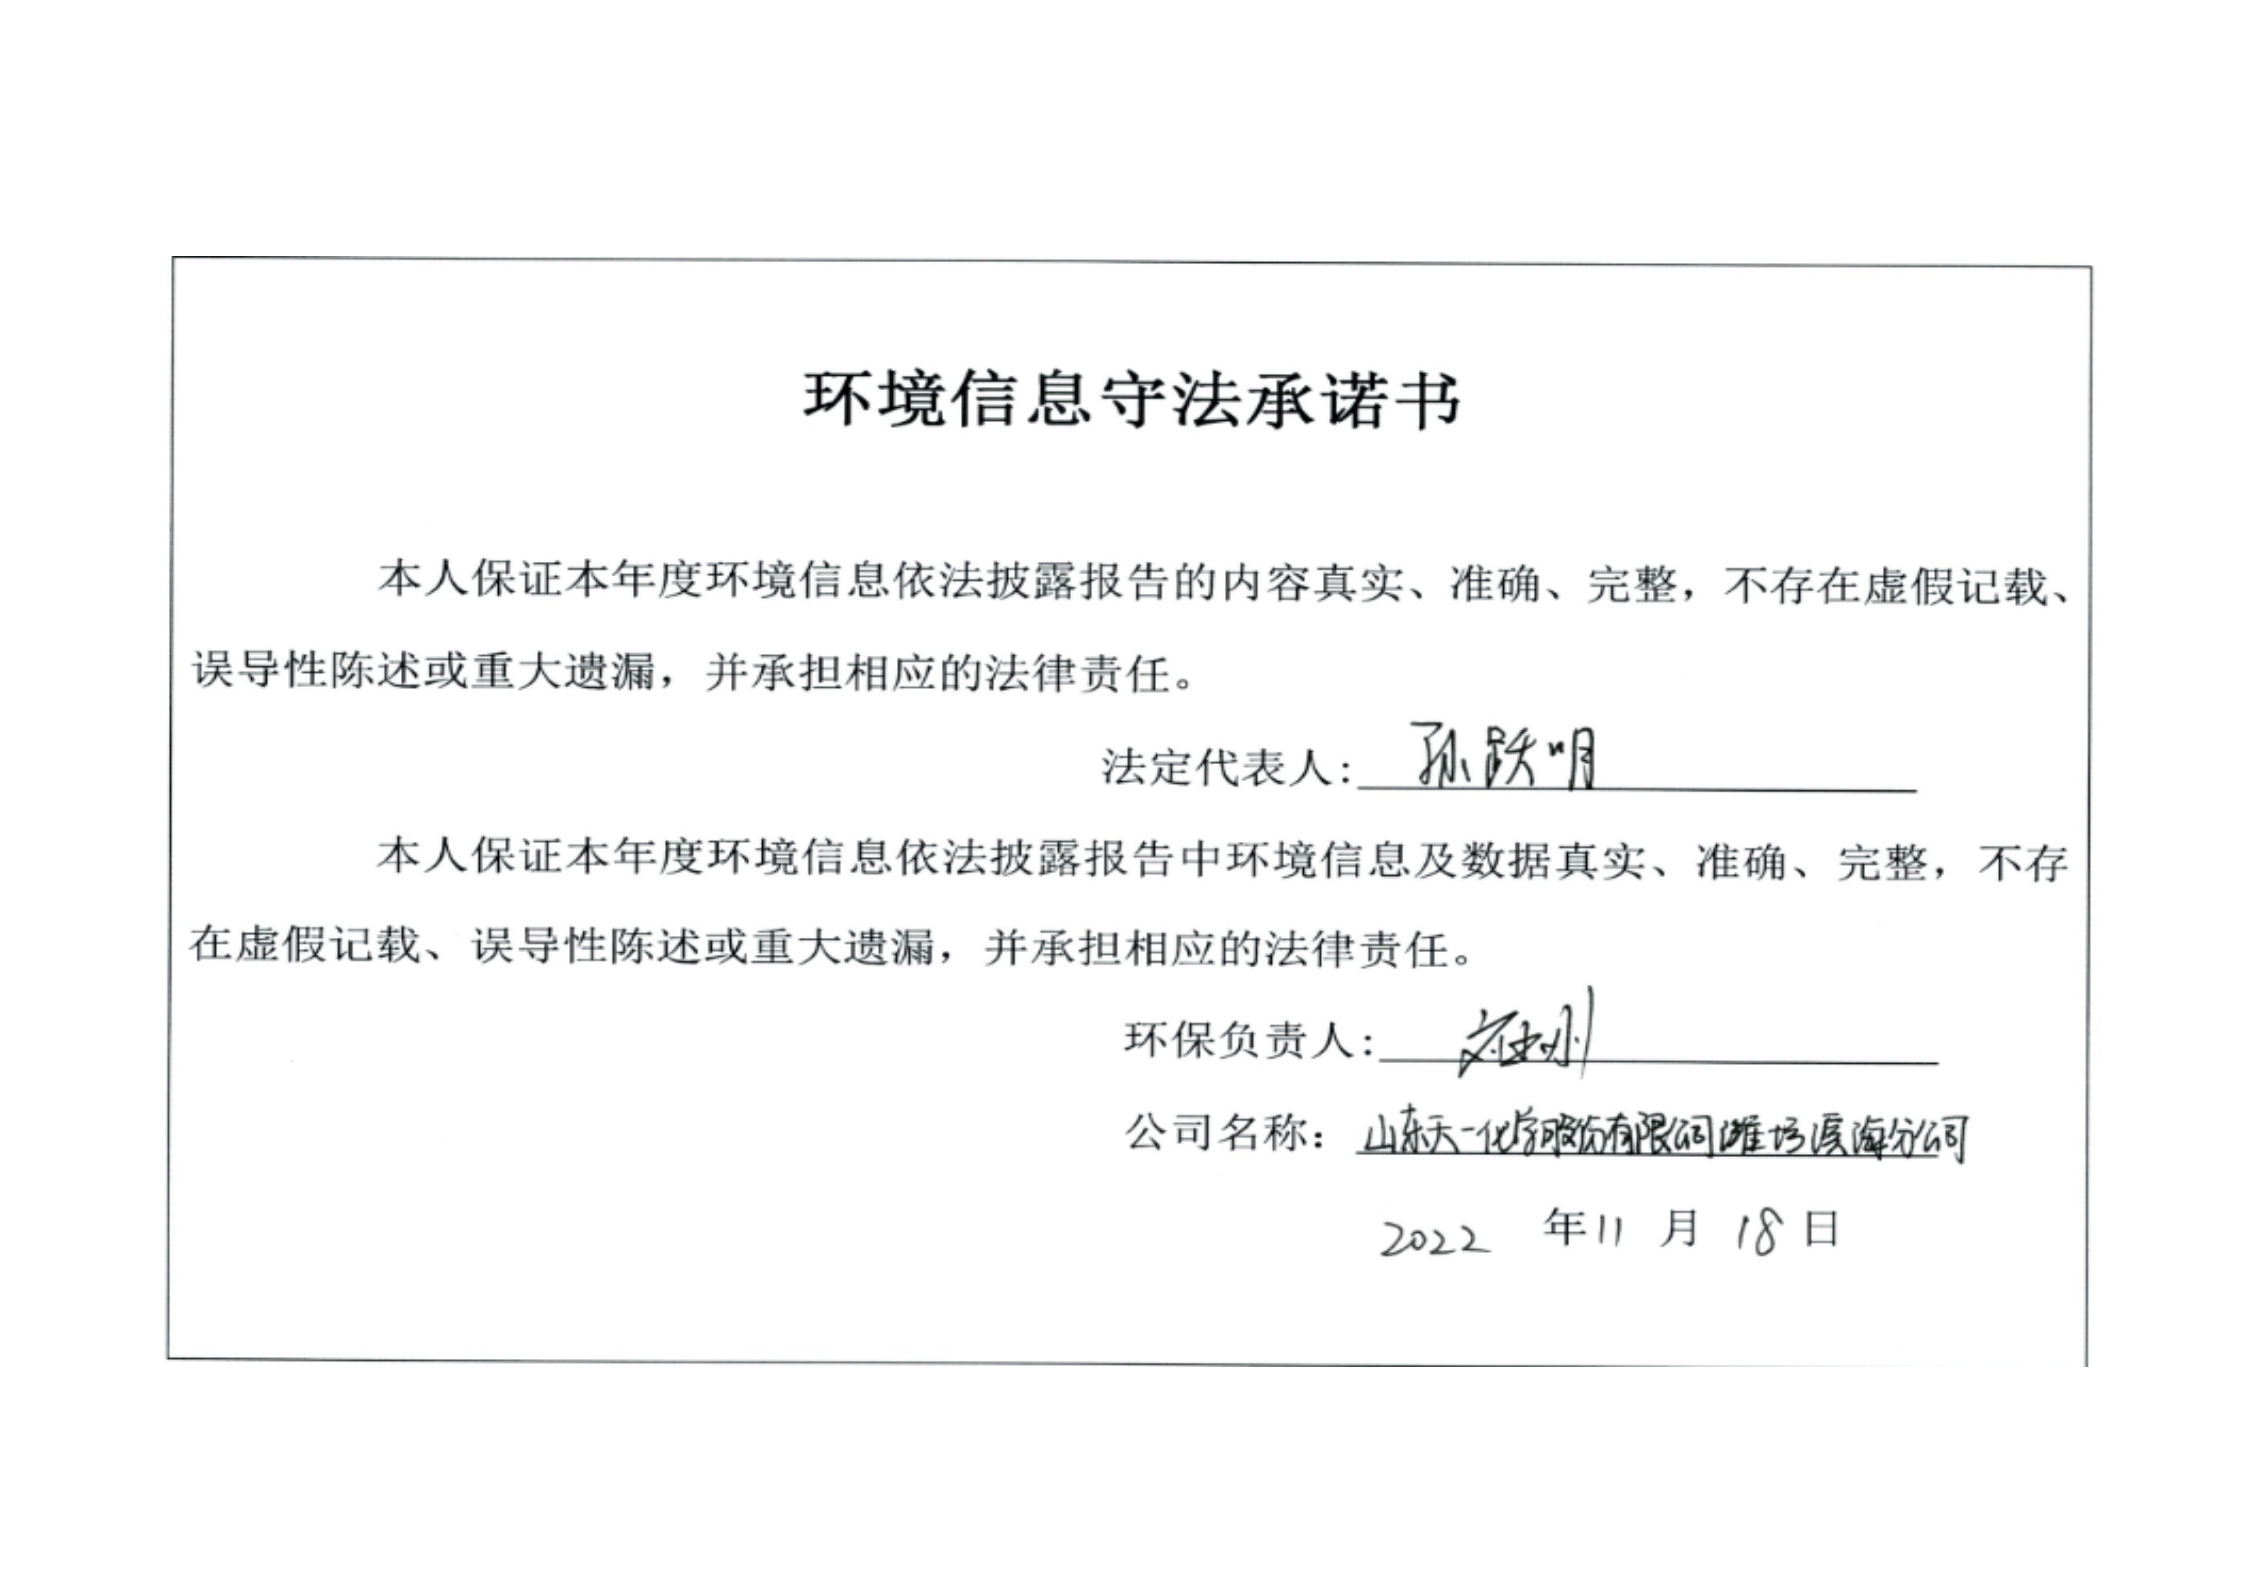 山东天一化学股份有限公司潍坊滨海分公司企业环境信息依法披露 临时报告